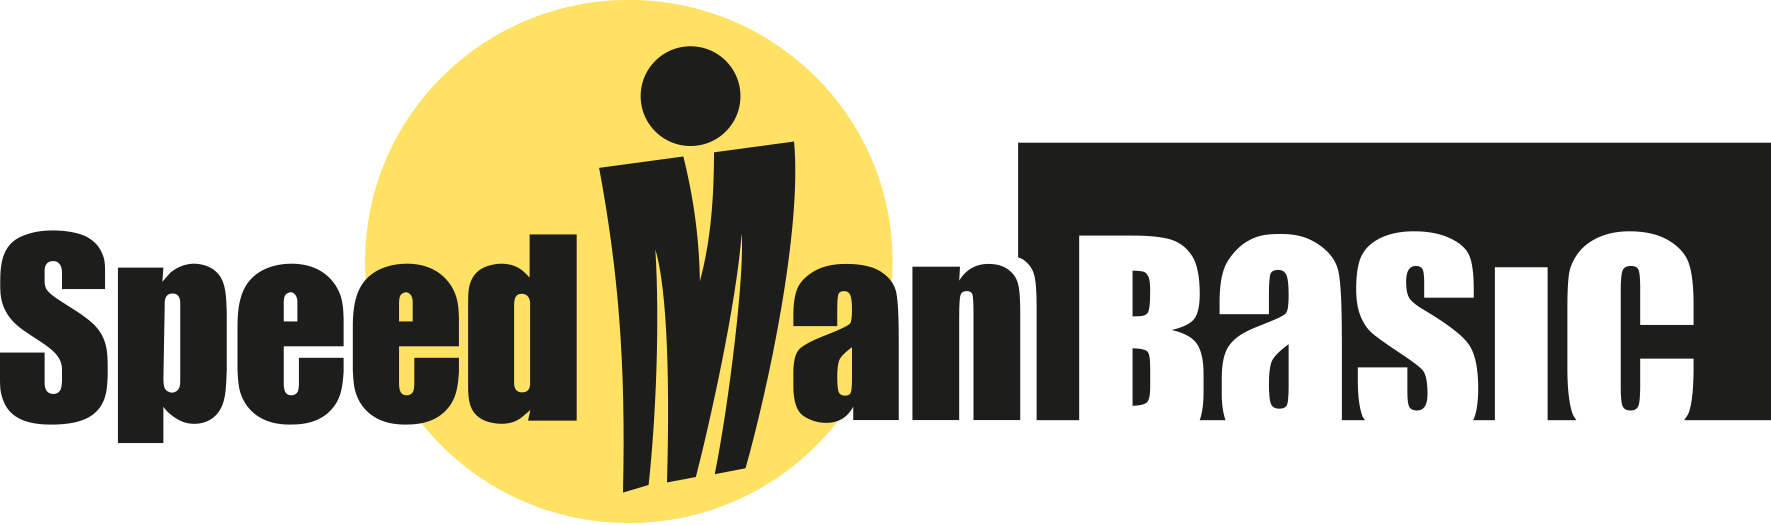 Logo SpeedMan® Basic